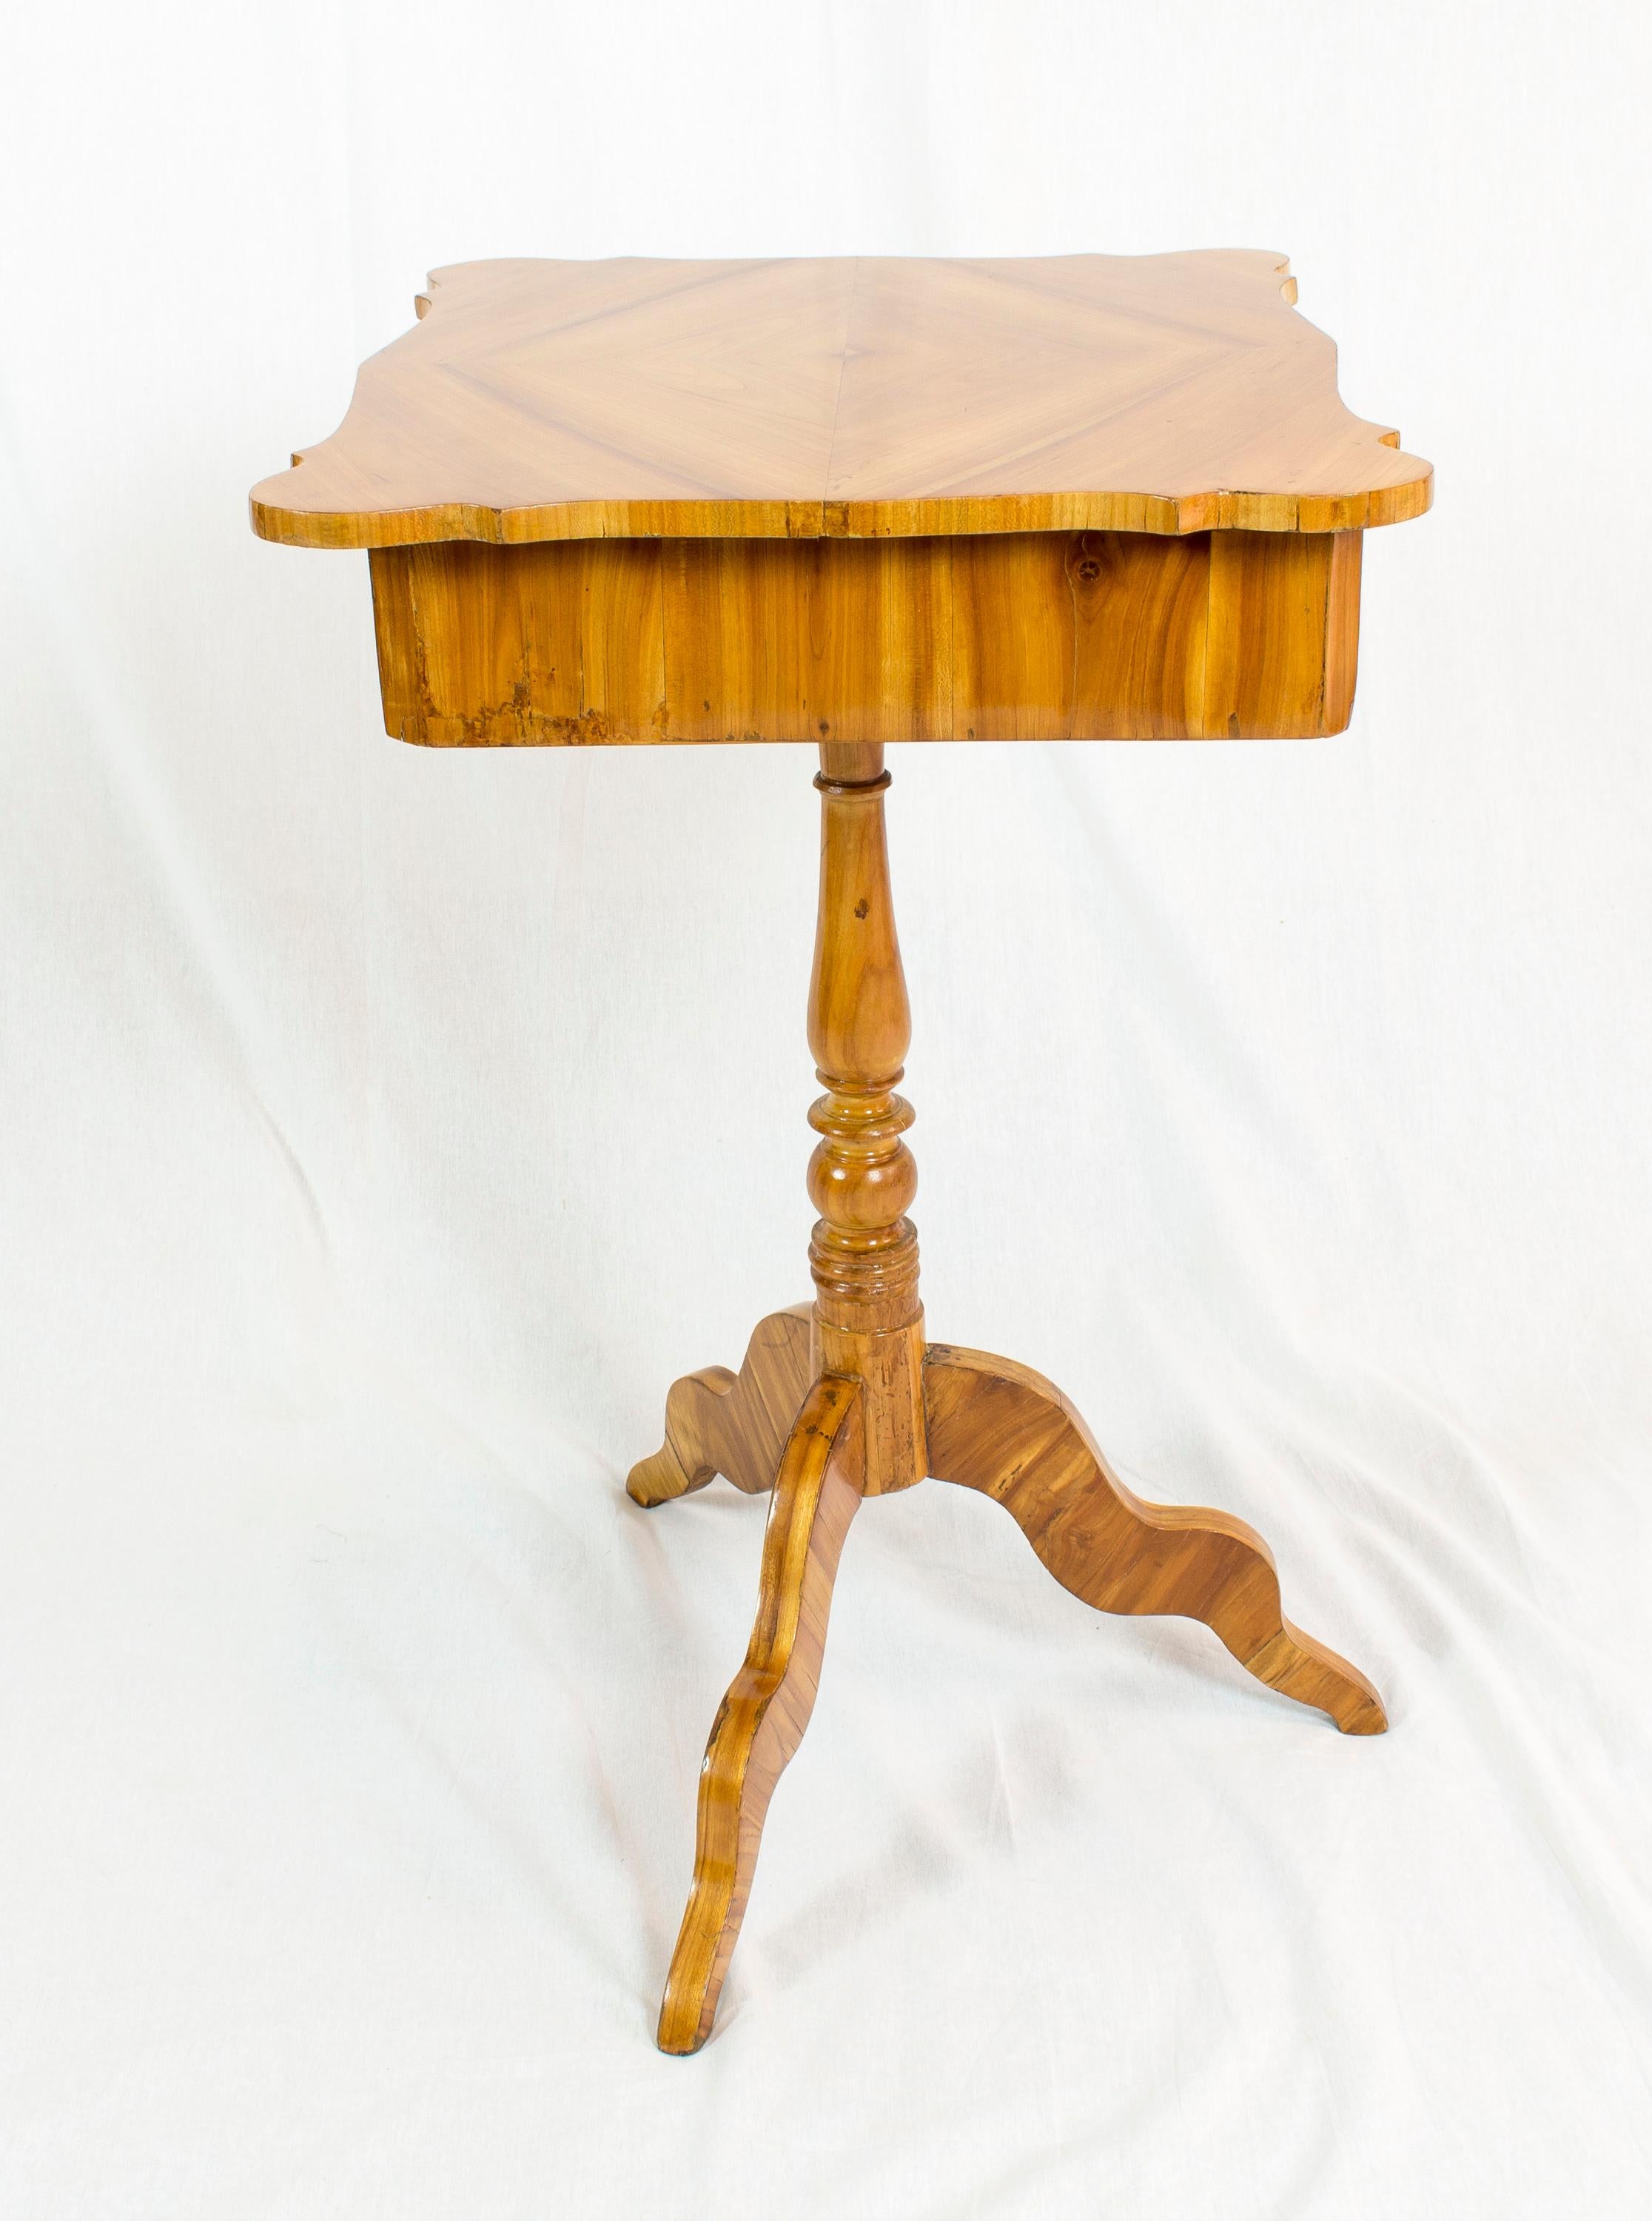 Schöner Näh- oder Beistelltisch aus Kirschbaumfurnier auf Fichtenholzkorpus. Der Tisch stammt aus der Zeit des Louis Philippe / Spätbiedermeier, genauer gesagt aus der Zeit um 1845. In sehr gutem restauriertem Zustand.